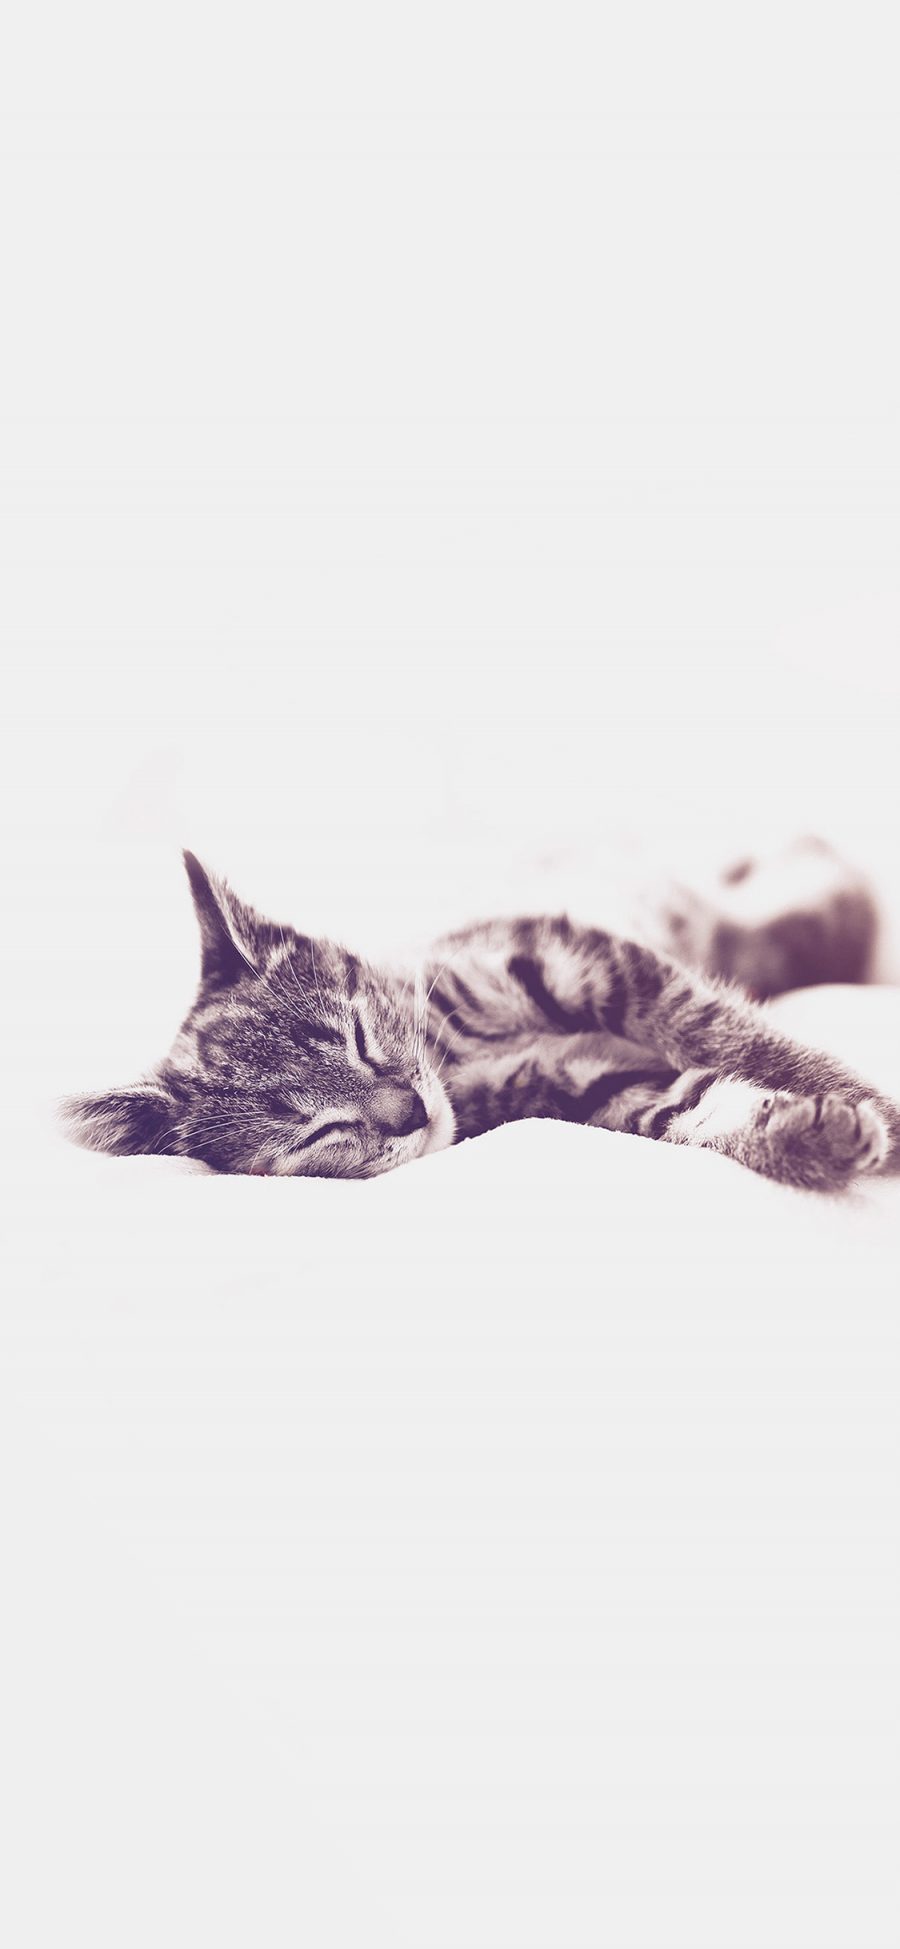 [2436×1125]猫咪 喵星人 可爱 萌宠 睡觉 苹果手机壁纸图片